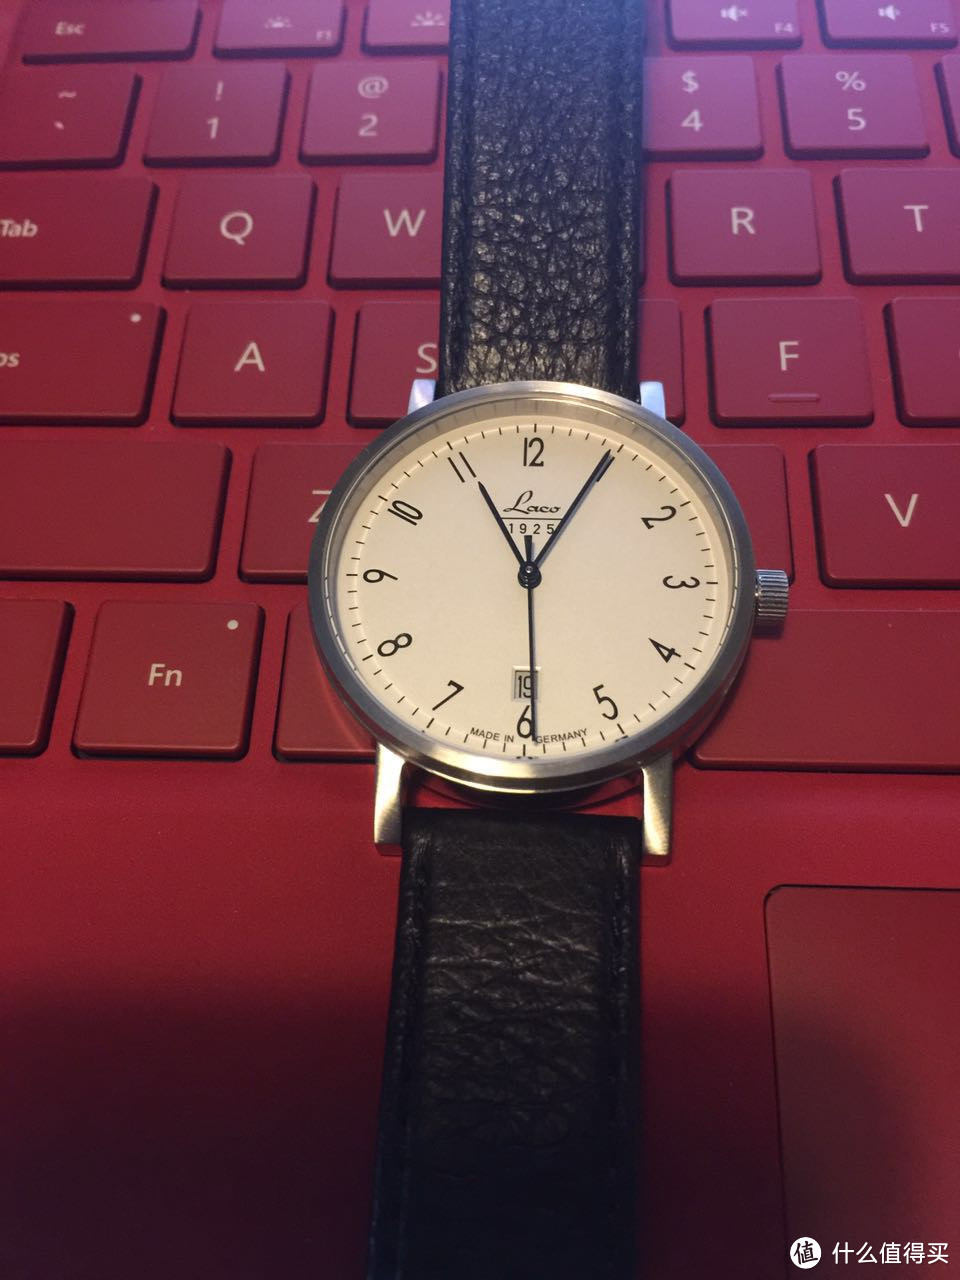 我前天买了个表！晒晒新买的 laco 德国朗坤 经典系列男士机械手表